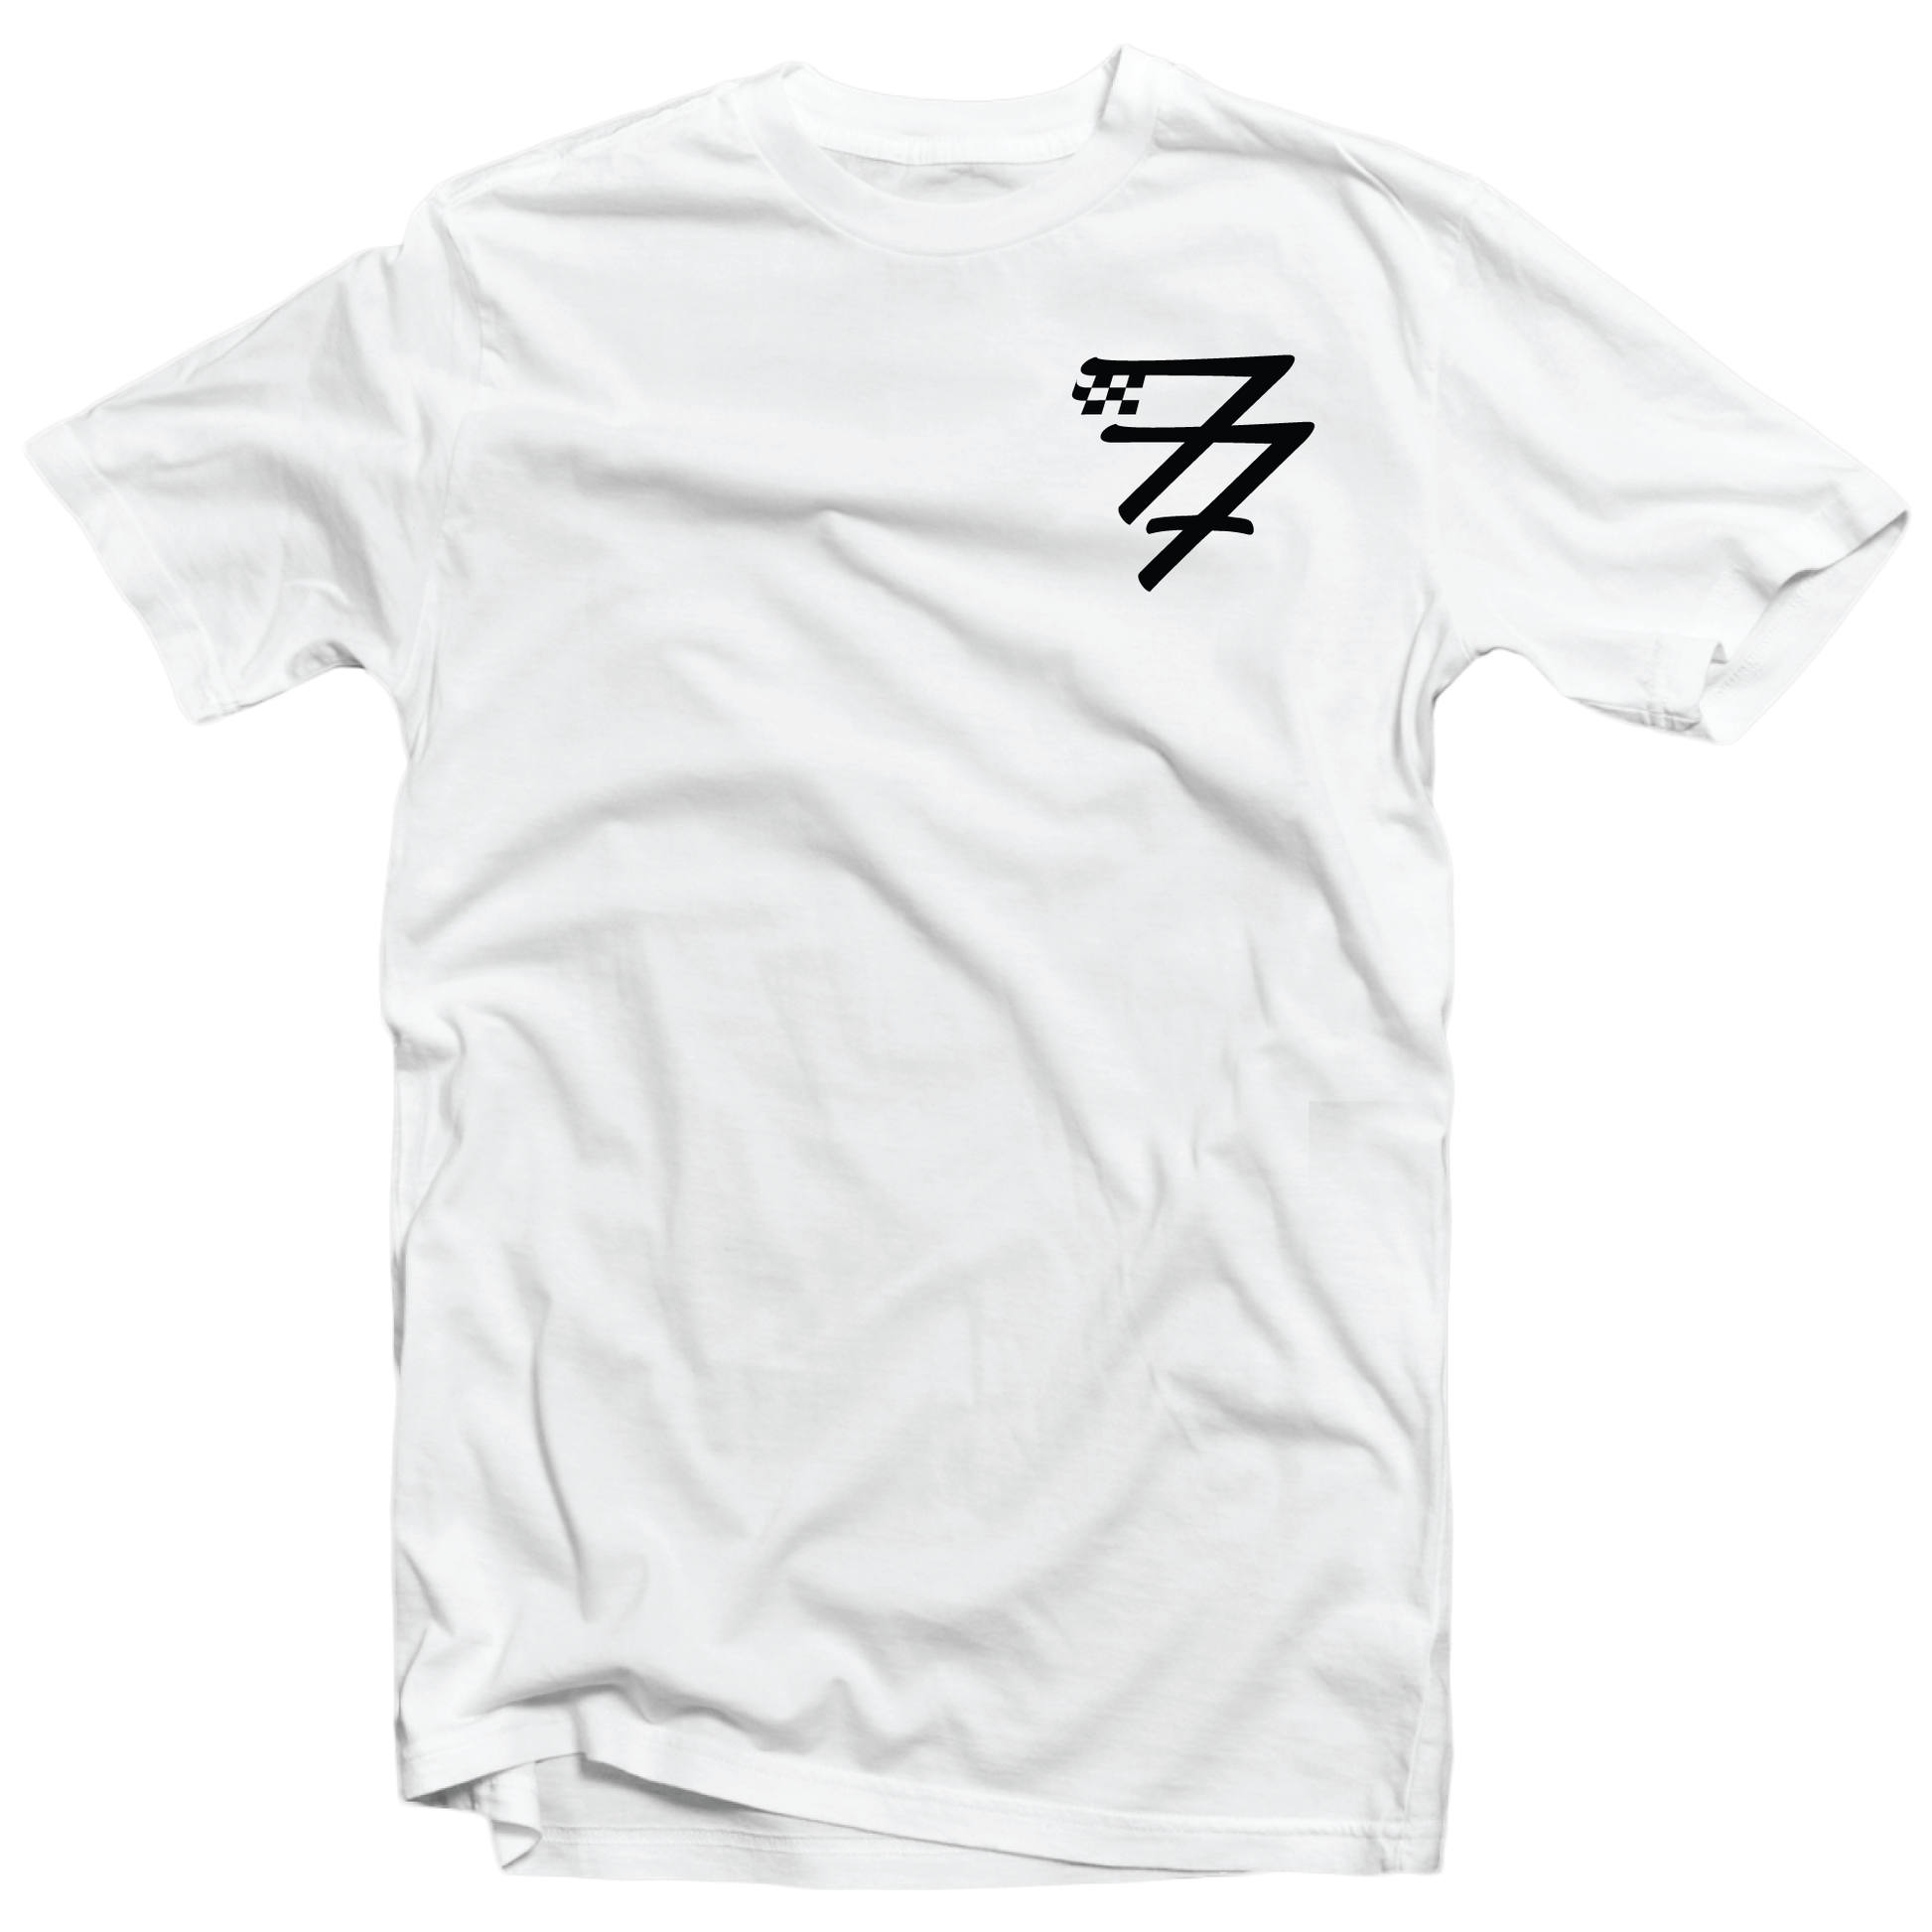 The Logo T - Shirt – Fastfriends